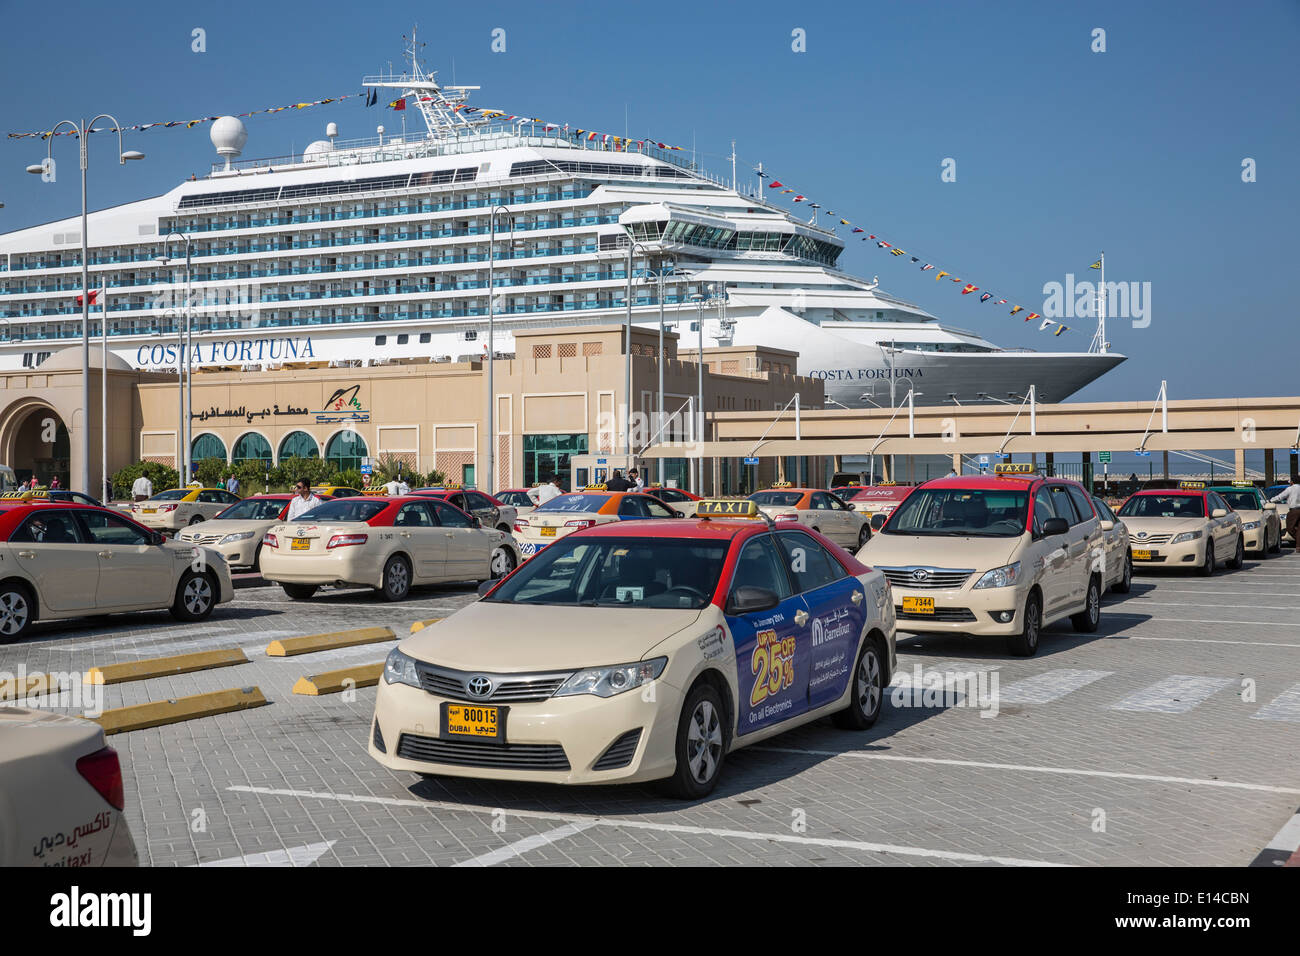 Emirats arabes unis, dubaï, navire de croisière Costa Fortuna, société de l'Italie, amarré dans le port. Taxi stand Banque D'Images